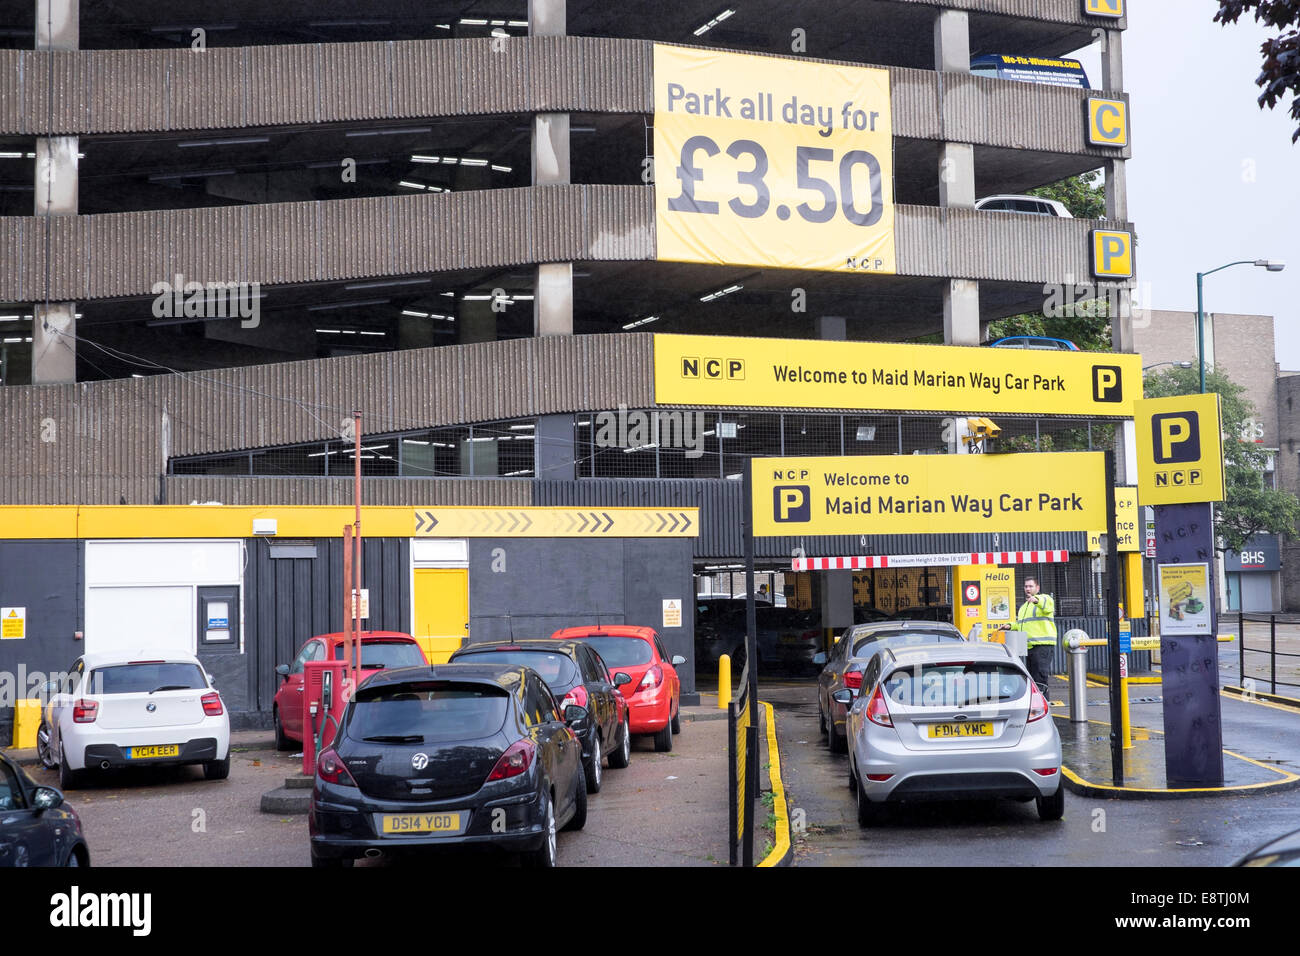 Un parking NCP tous les jours £3.50, Nottingham, UK . Banque D'Images